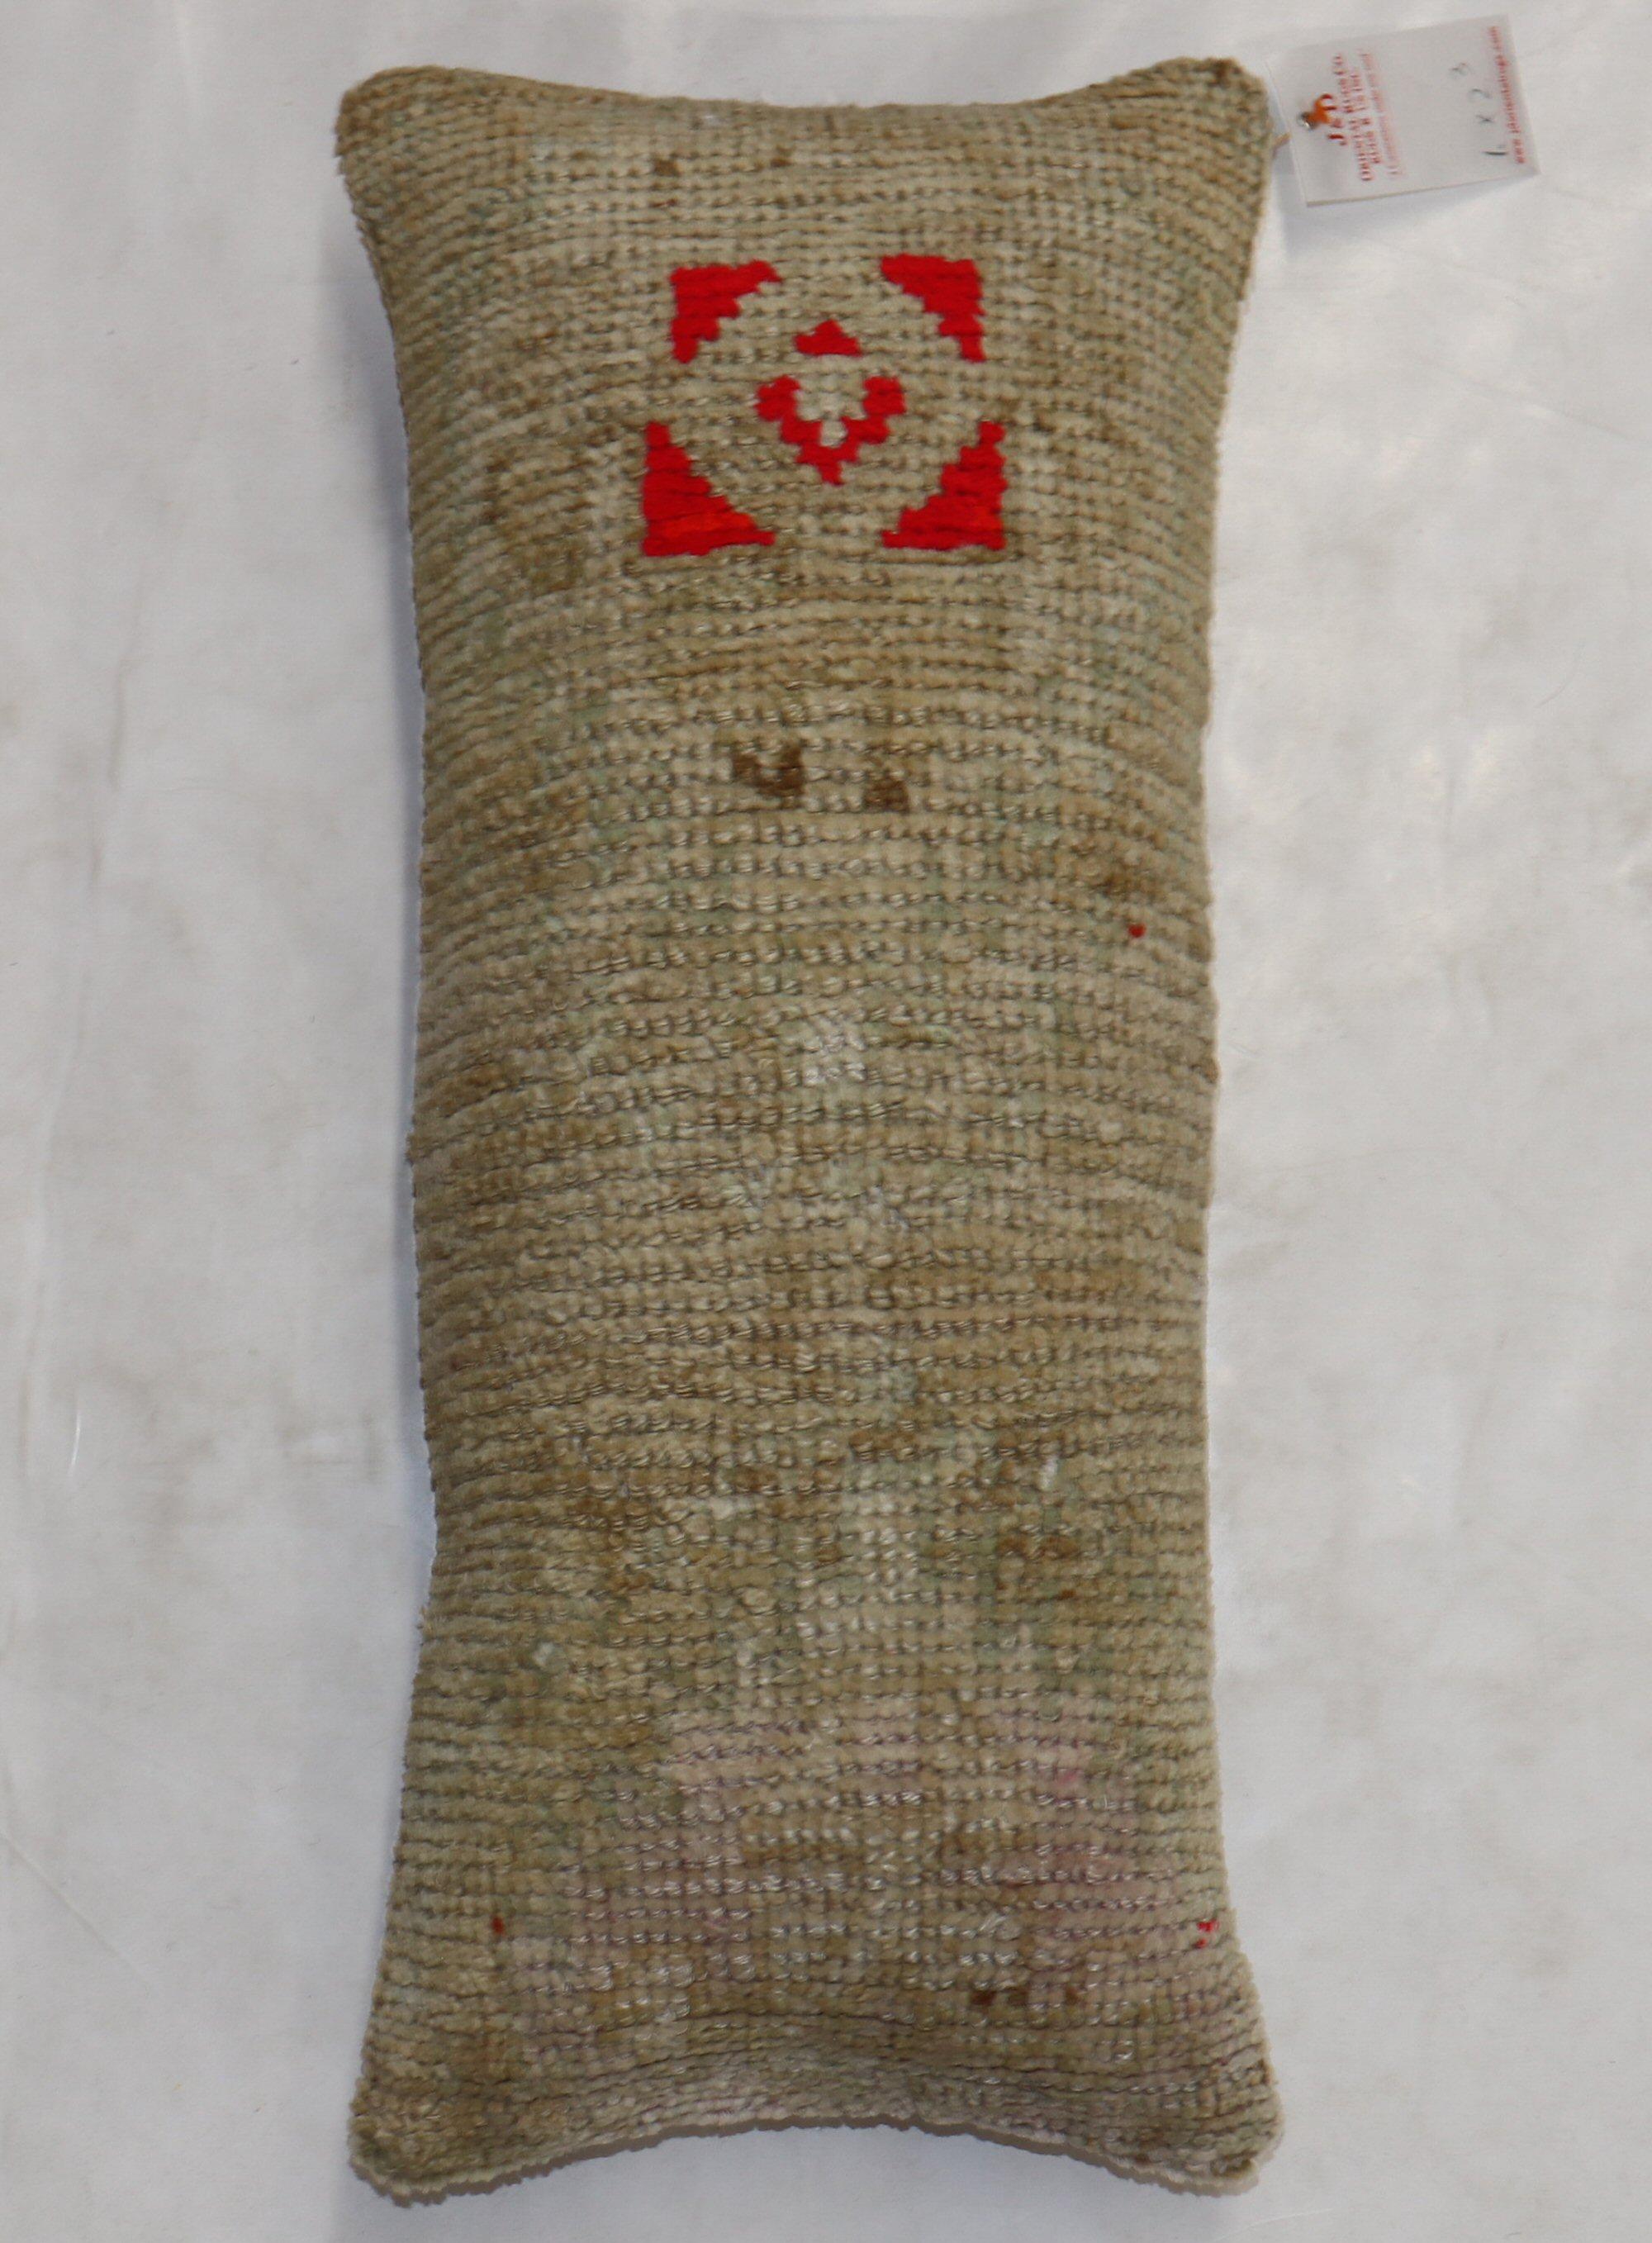 Bolster GrößeKissen aus einer Bordüre eines türkischen anatolischen Teppichs aus dem 20. Jahrhundert.

Größe: 12